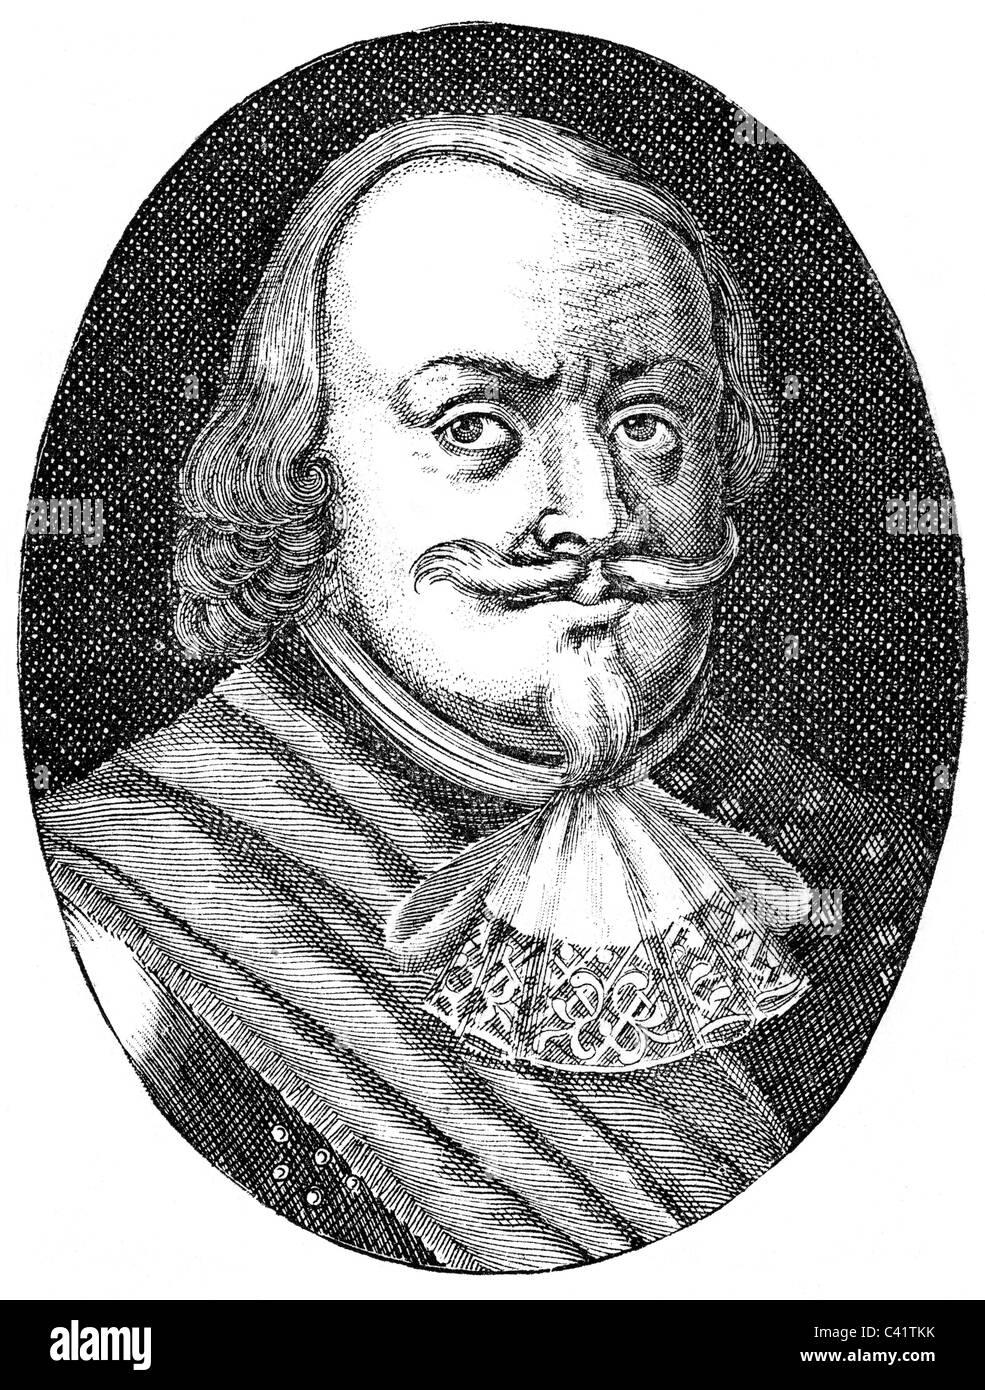 Banér, Johan count, 23.6.1598 - 10.5.1641, général suédois, portrait, gravure sur bois, XIXe siècle, , Banque D'Images